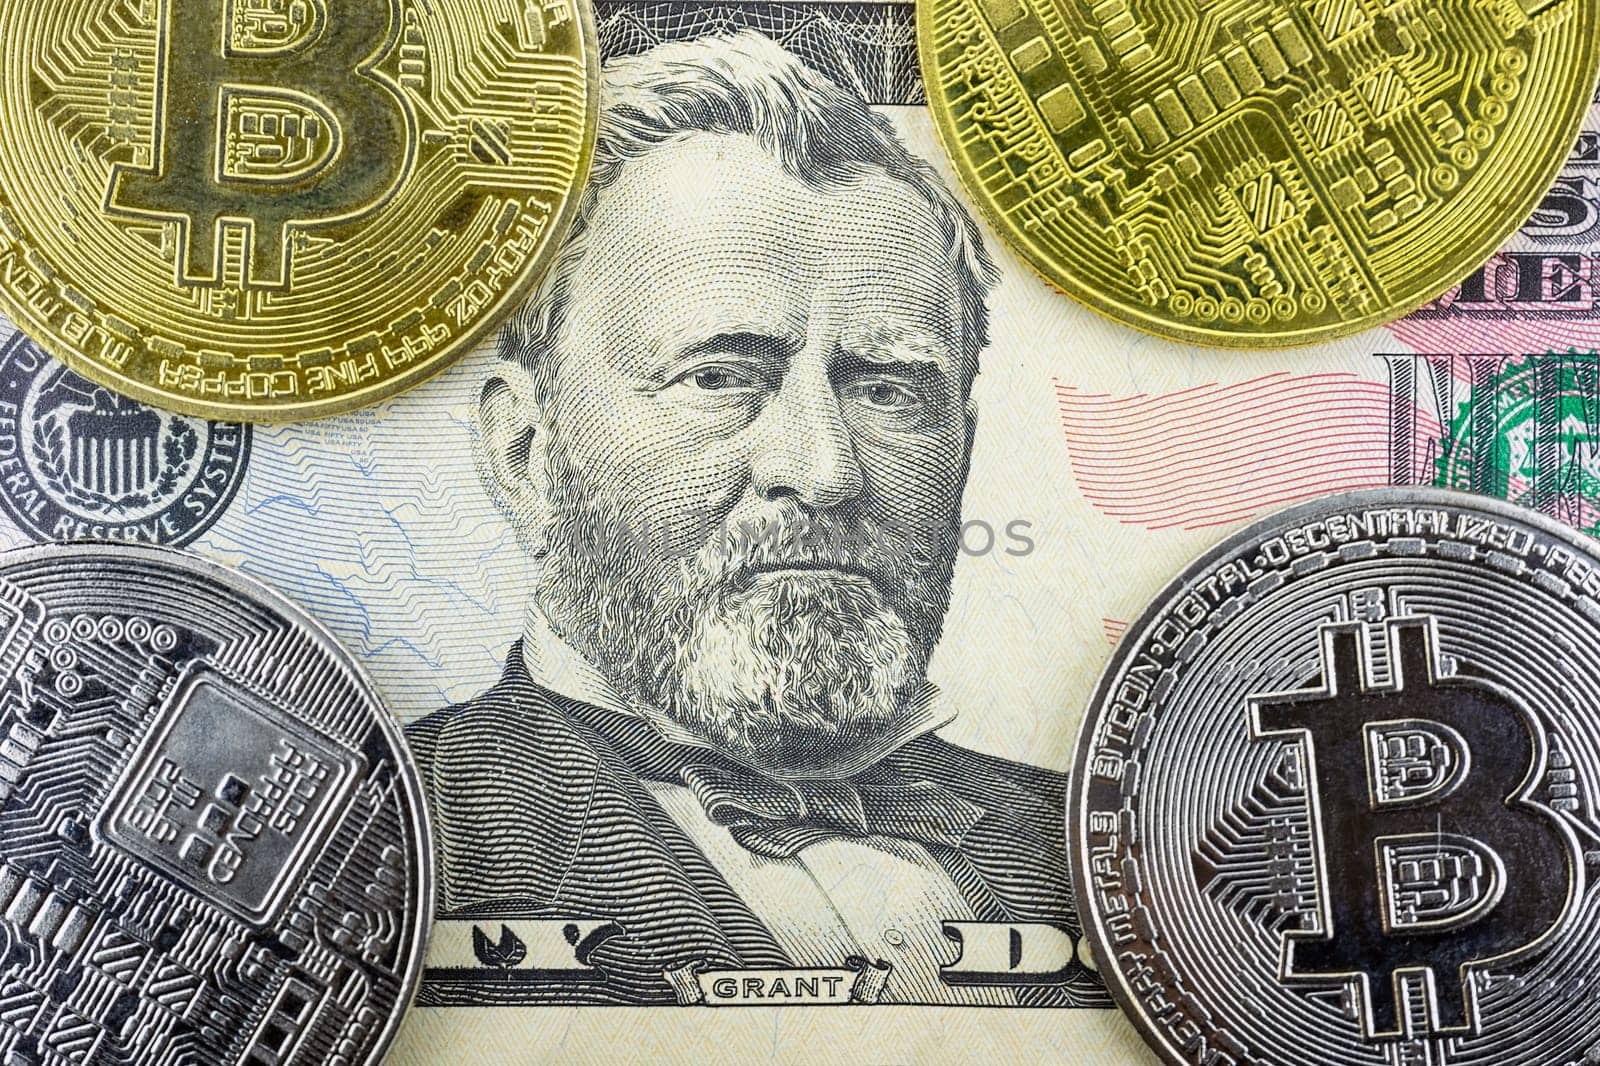 Bitcoin coins lie on a fifty dollar bill, close-up